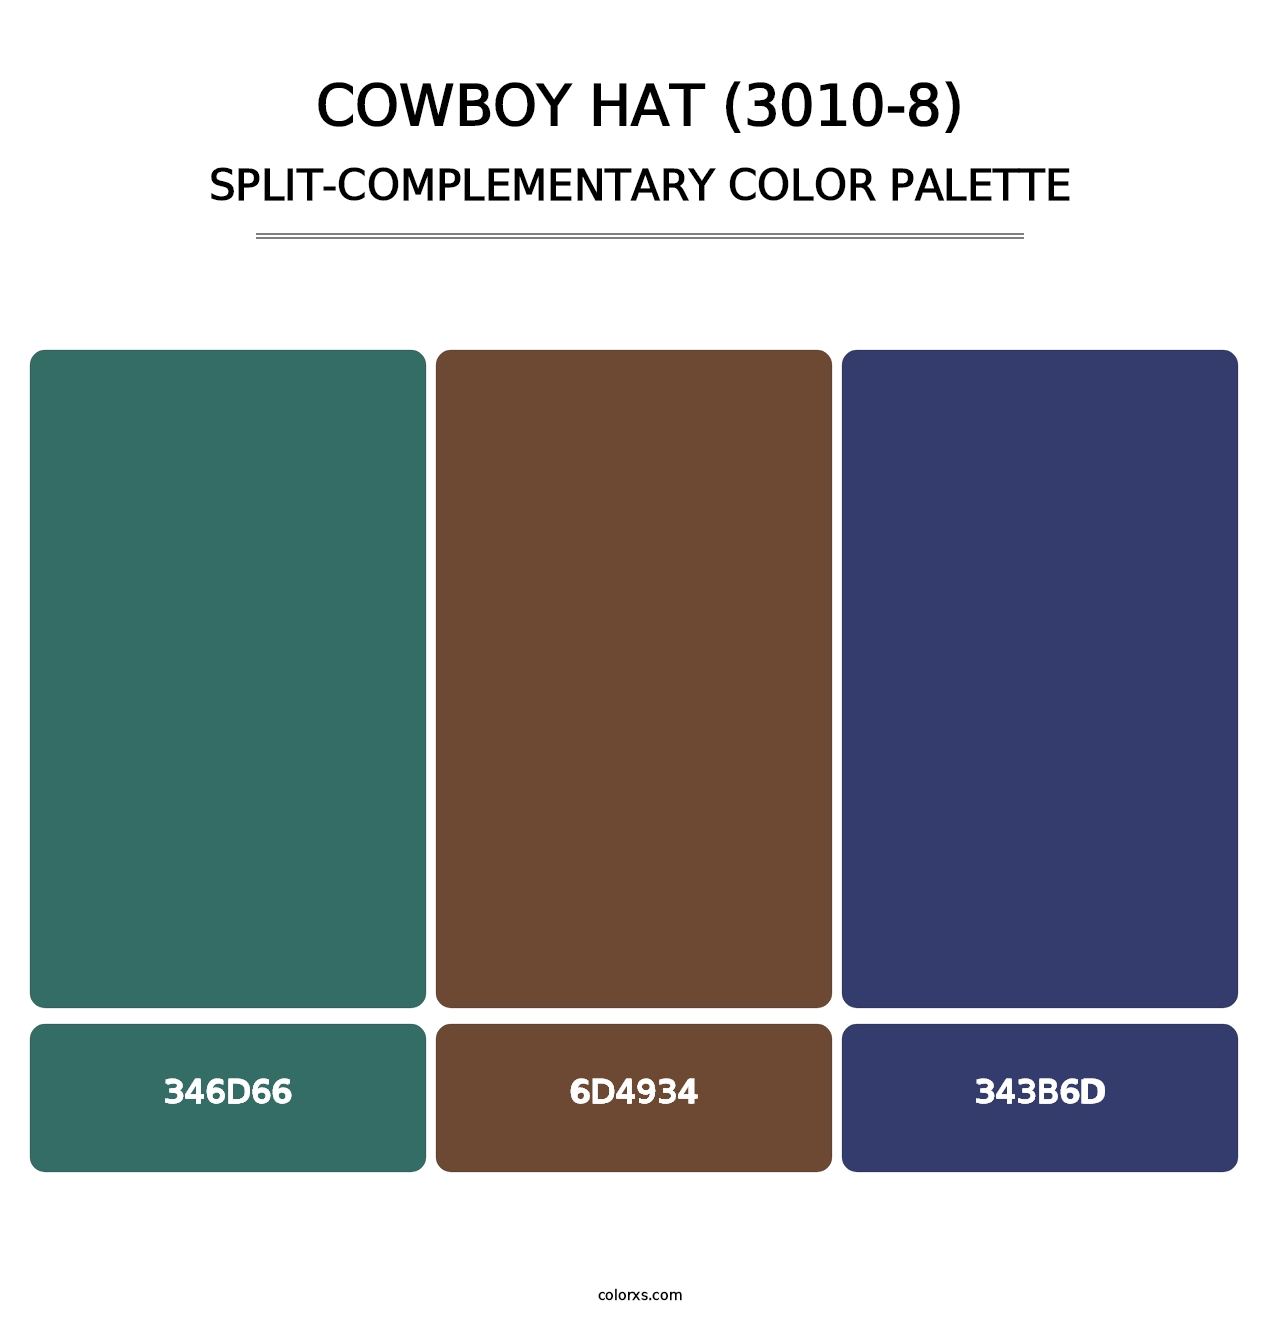 Cowboy Hat (3010-8) - Split-Complementary Color Palette